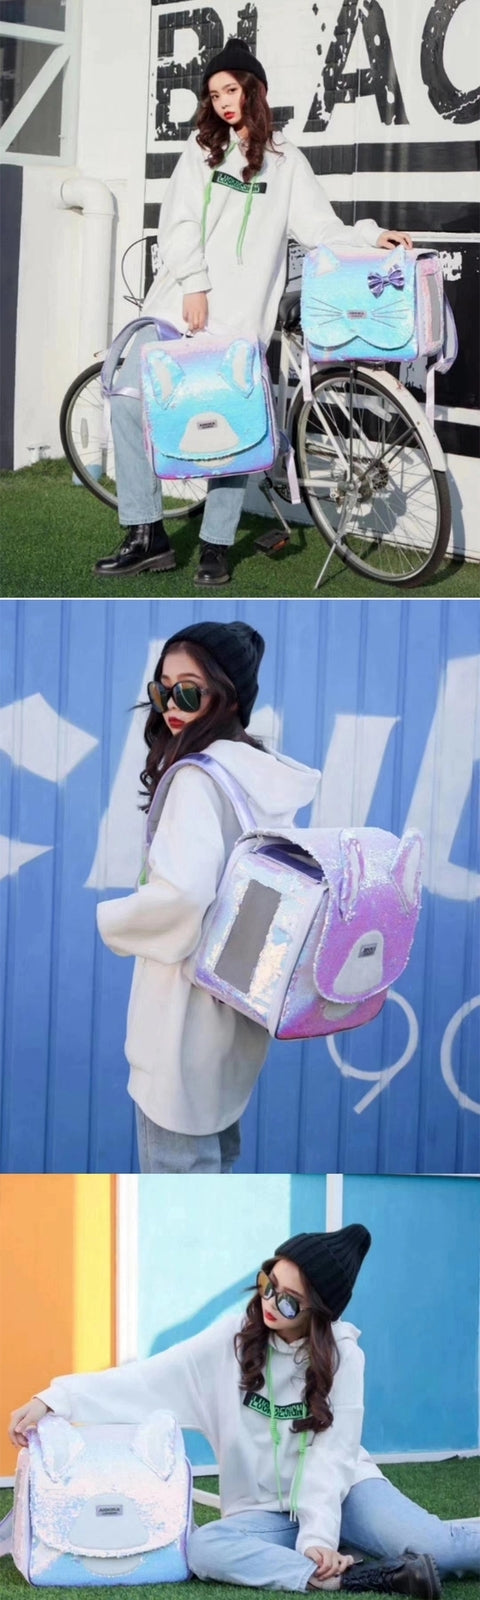 Arkika Sparkling Sequin Backpack Pet Carrier Bag